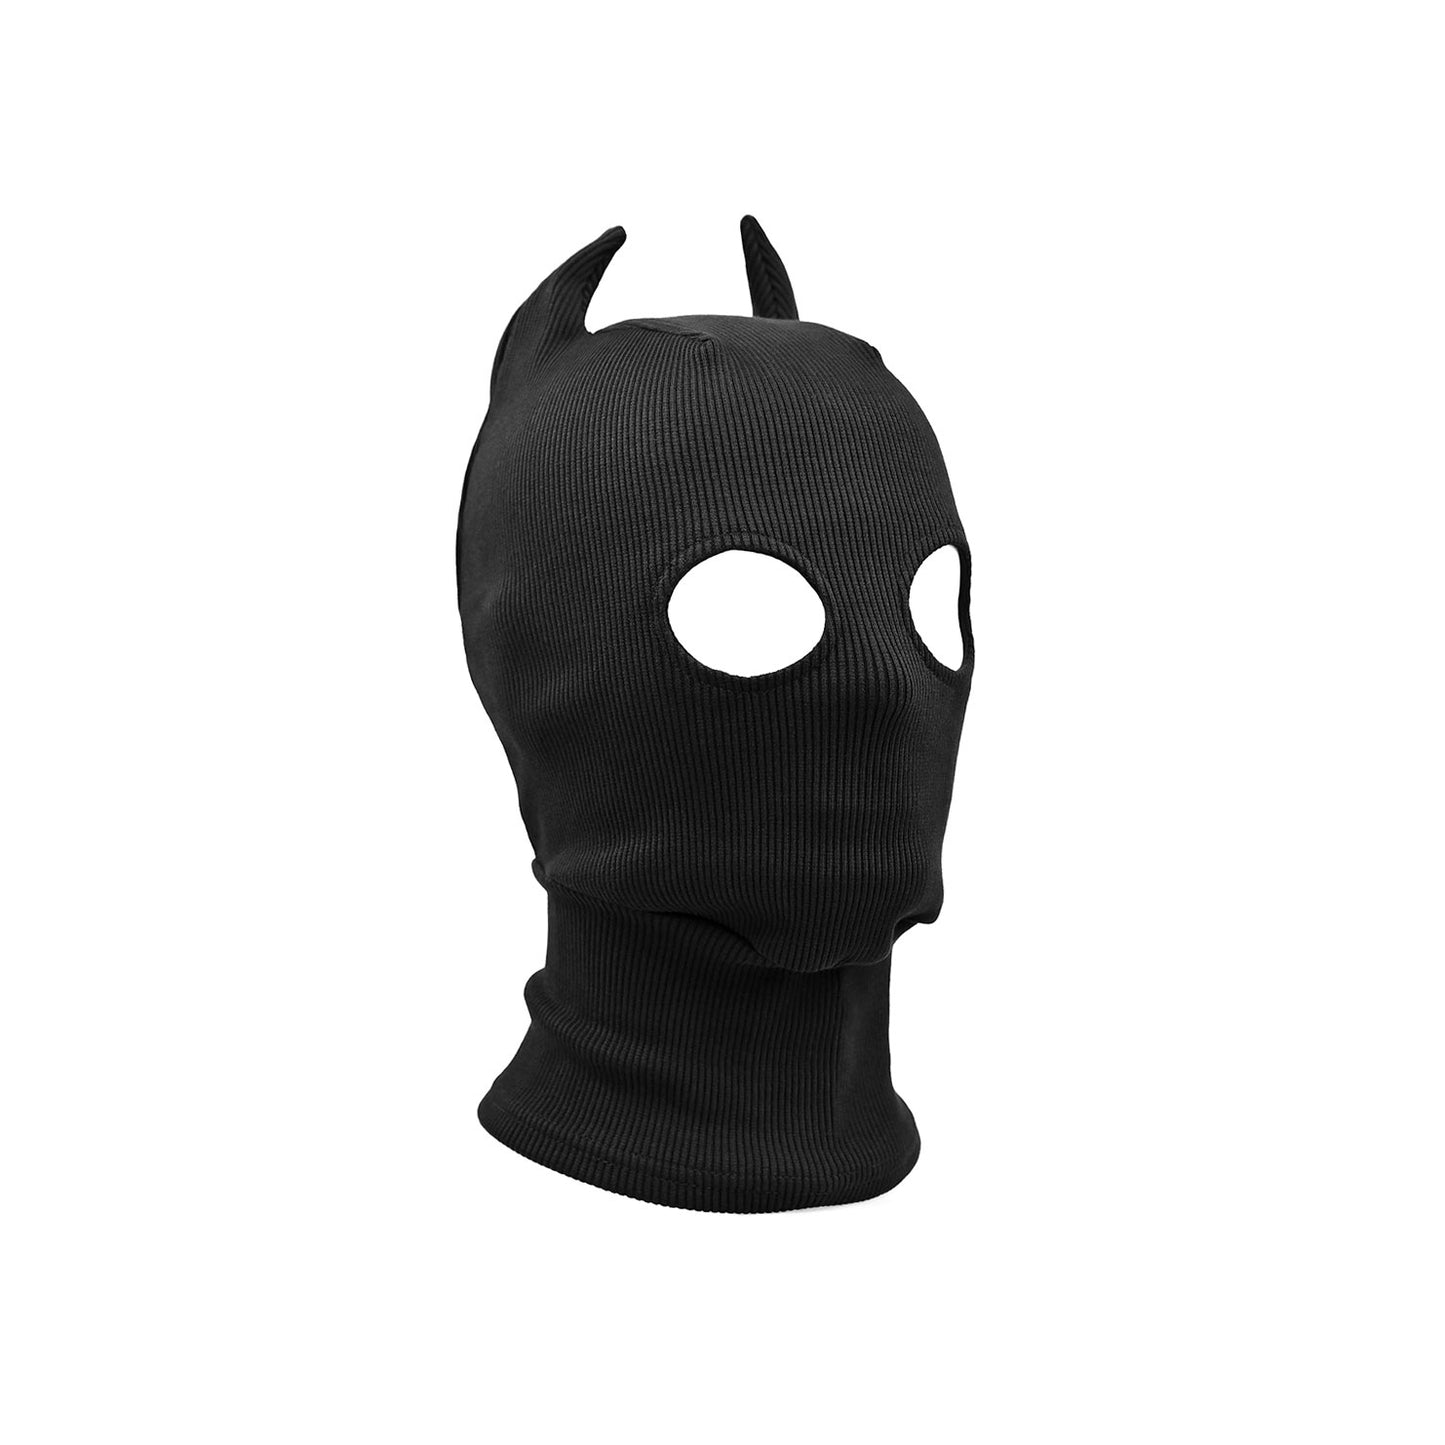 Black Malinois Mask